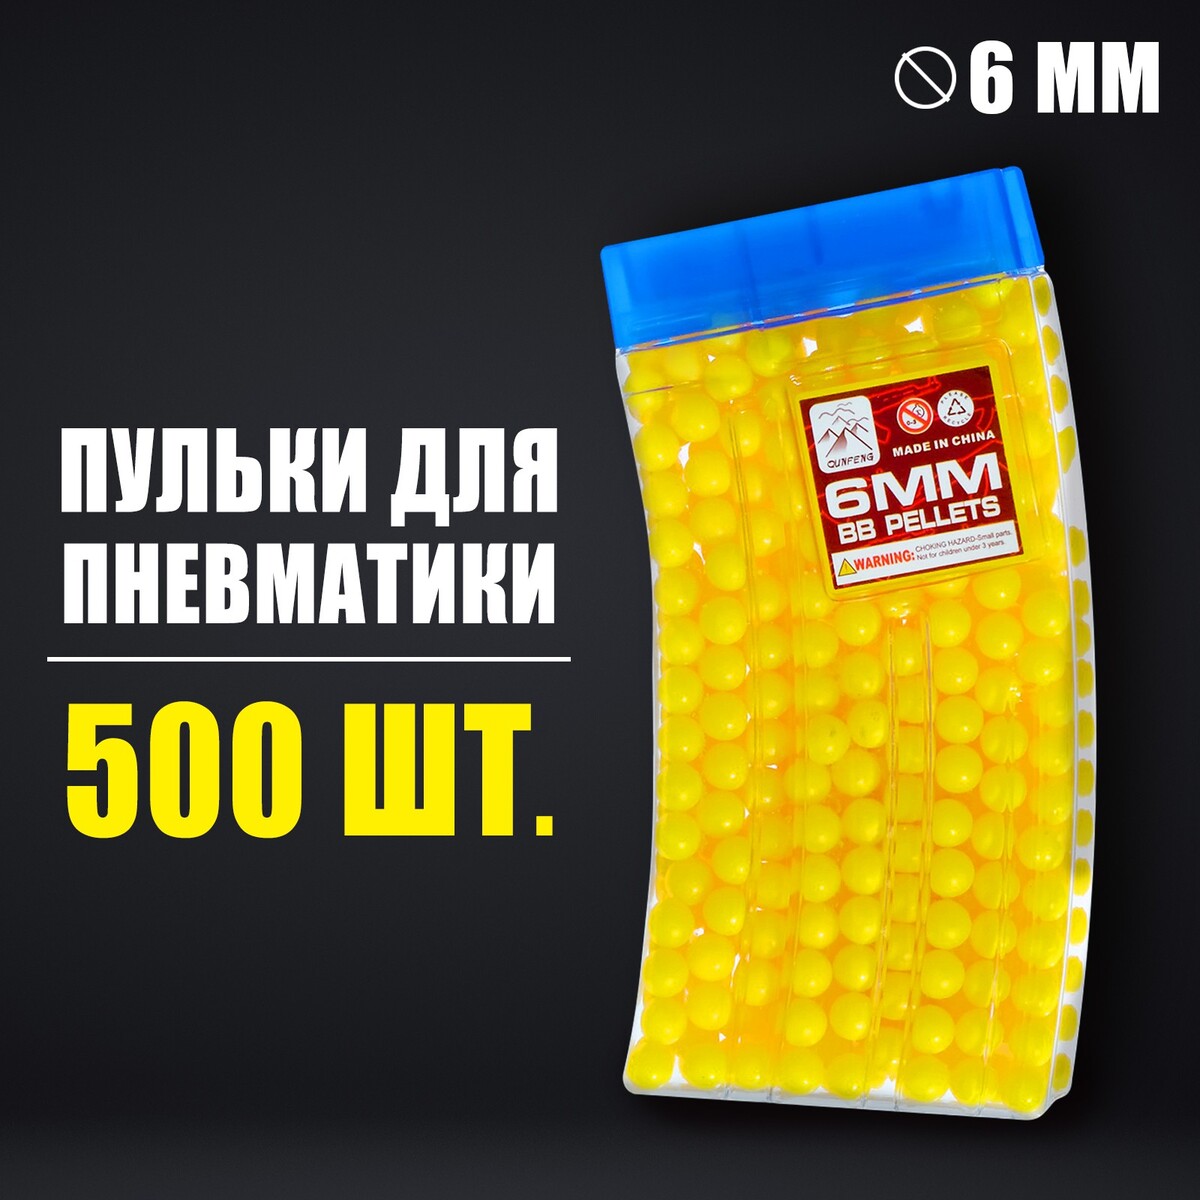 Пульки 6 мм в рожке, 500 шт., цвет желтый